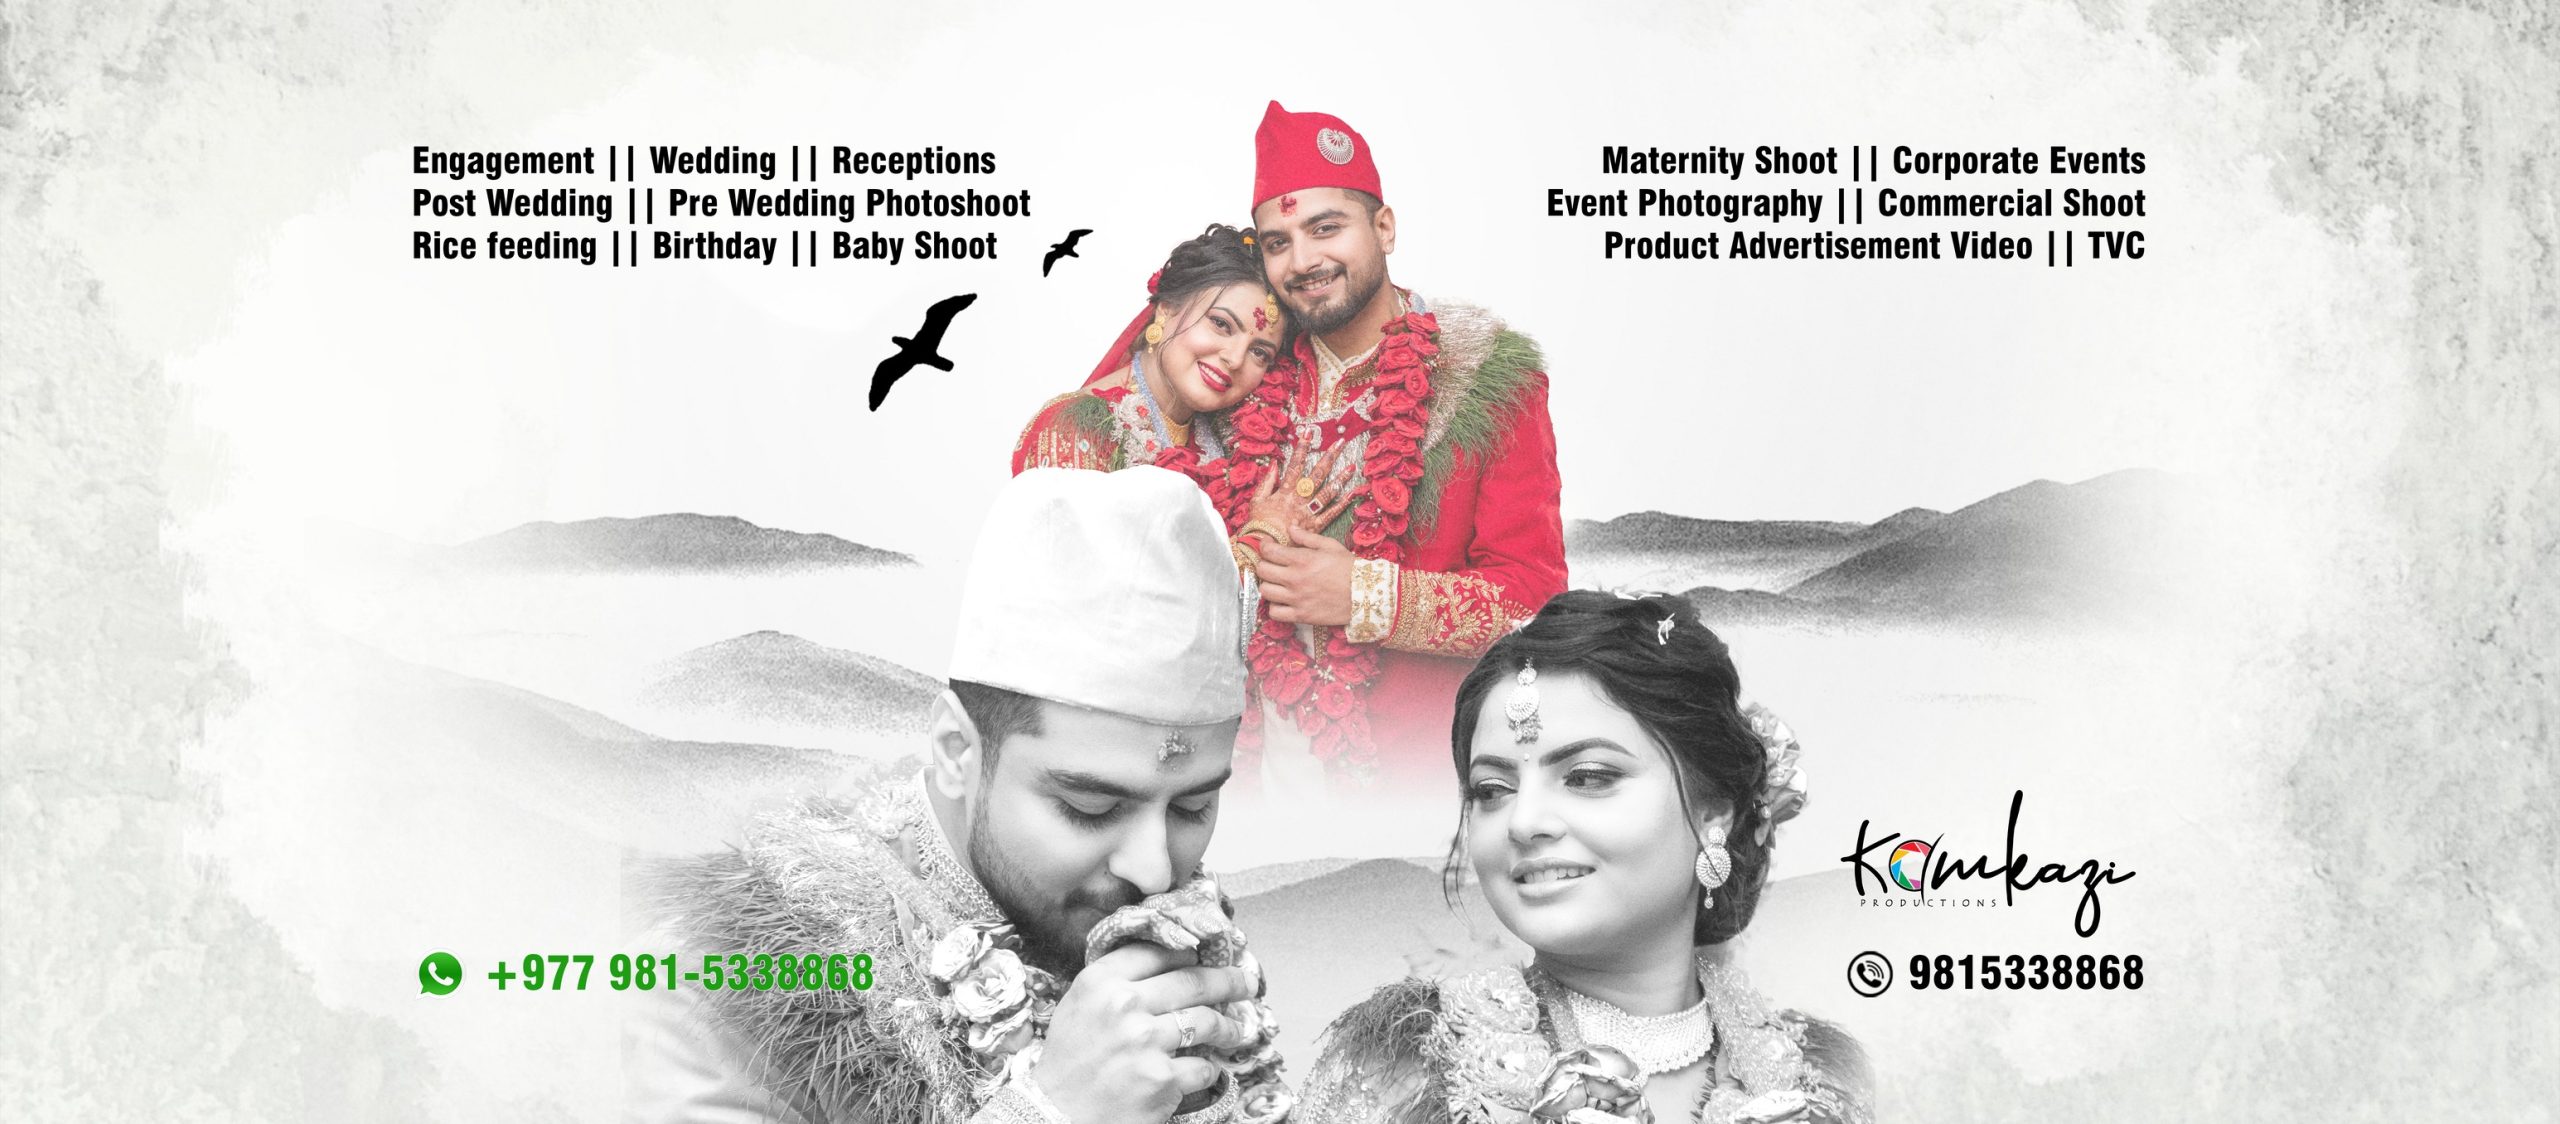 wedding photography at biratnagar kamkazi production ayush shrestha